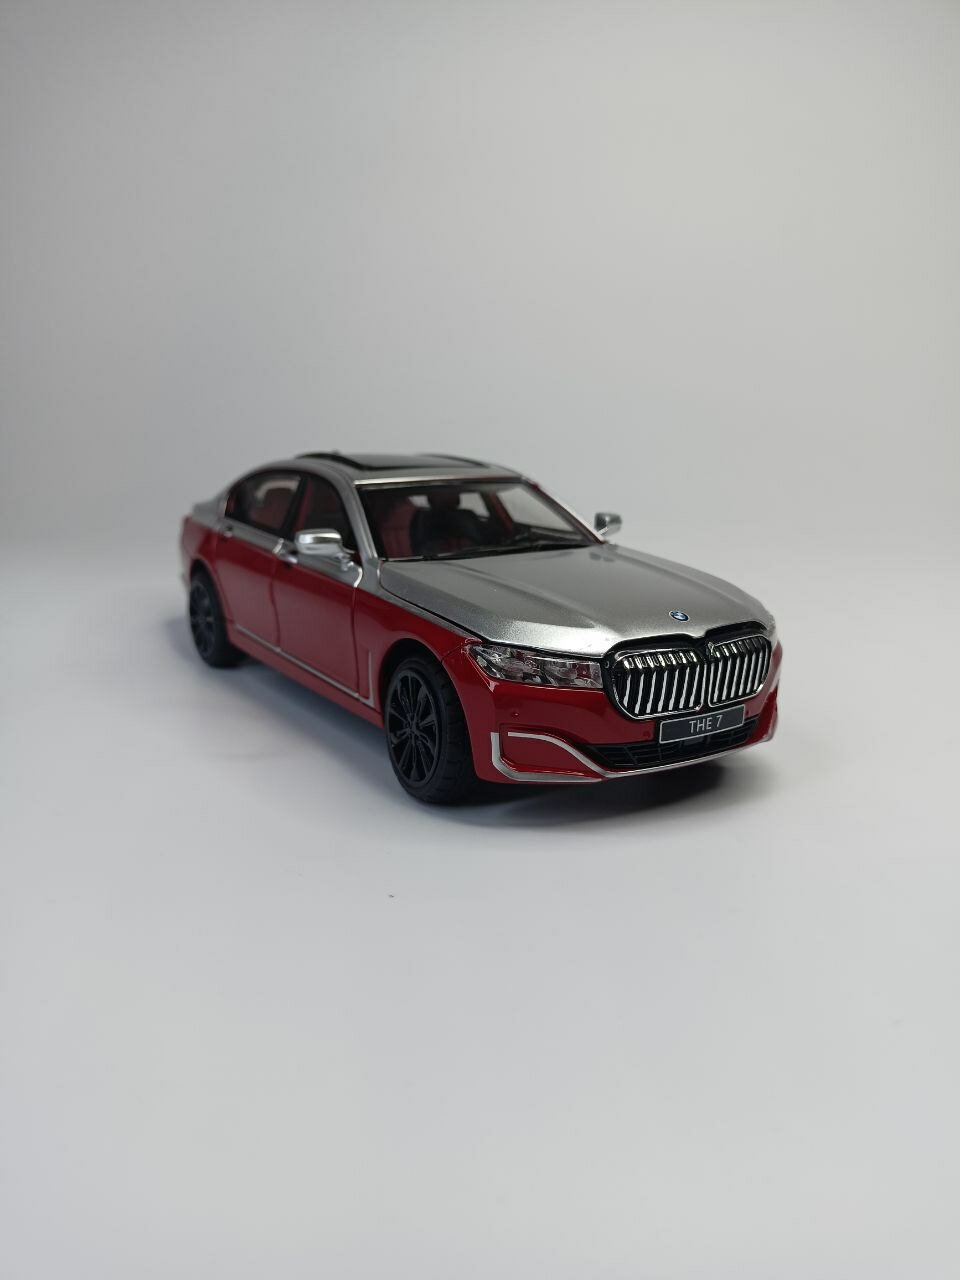 Модель автомобиля BMW M7 коллекционная металлическая игрушка масштаб 1:24 серо-красный